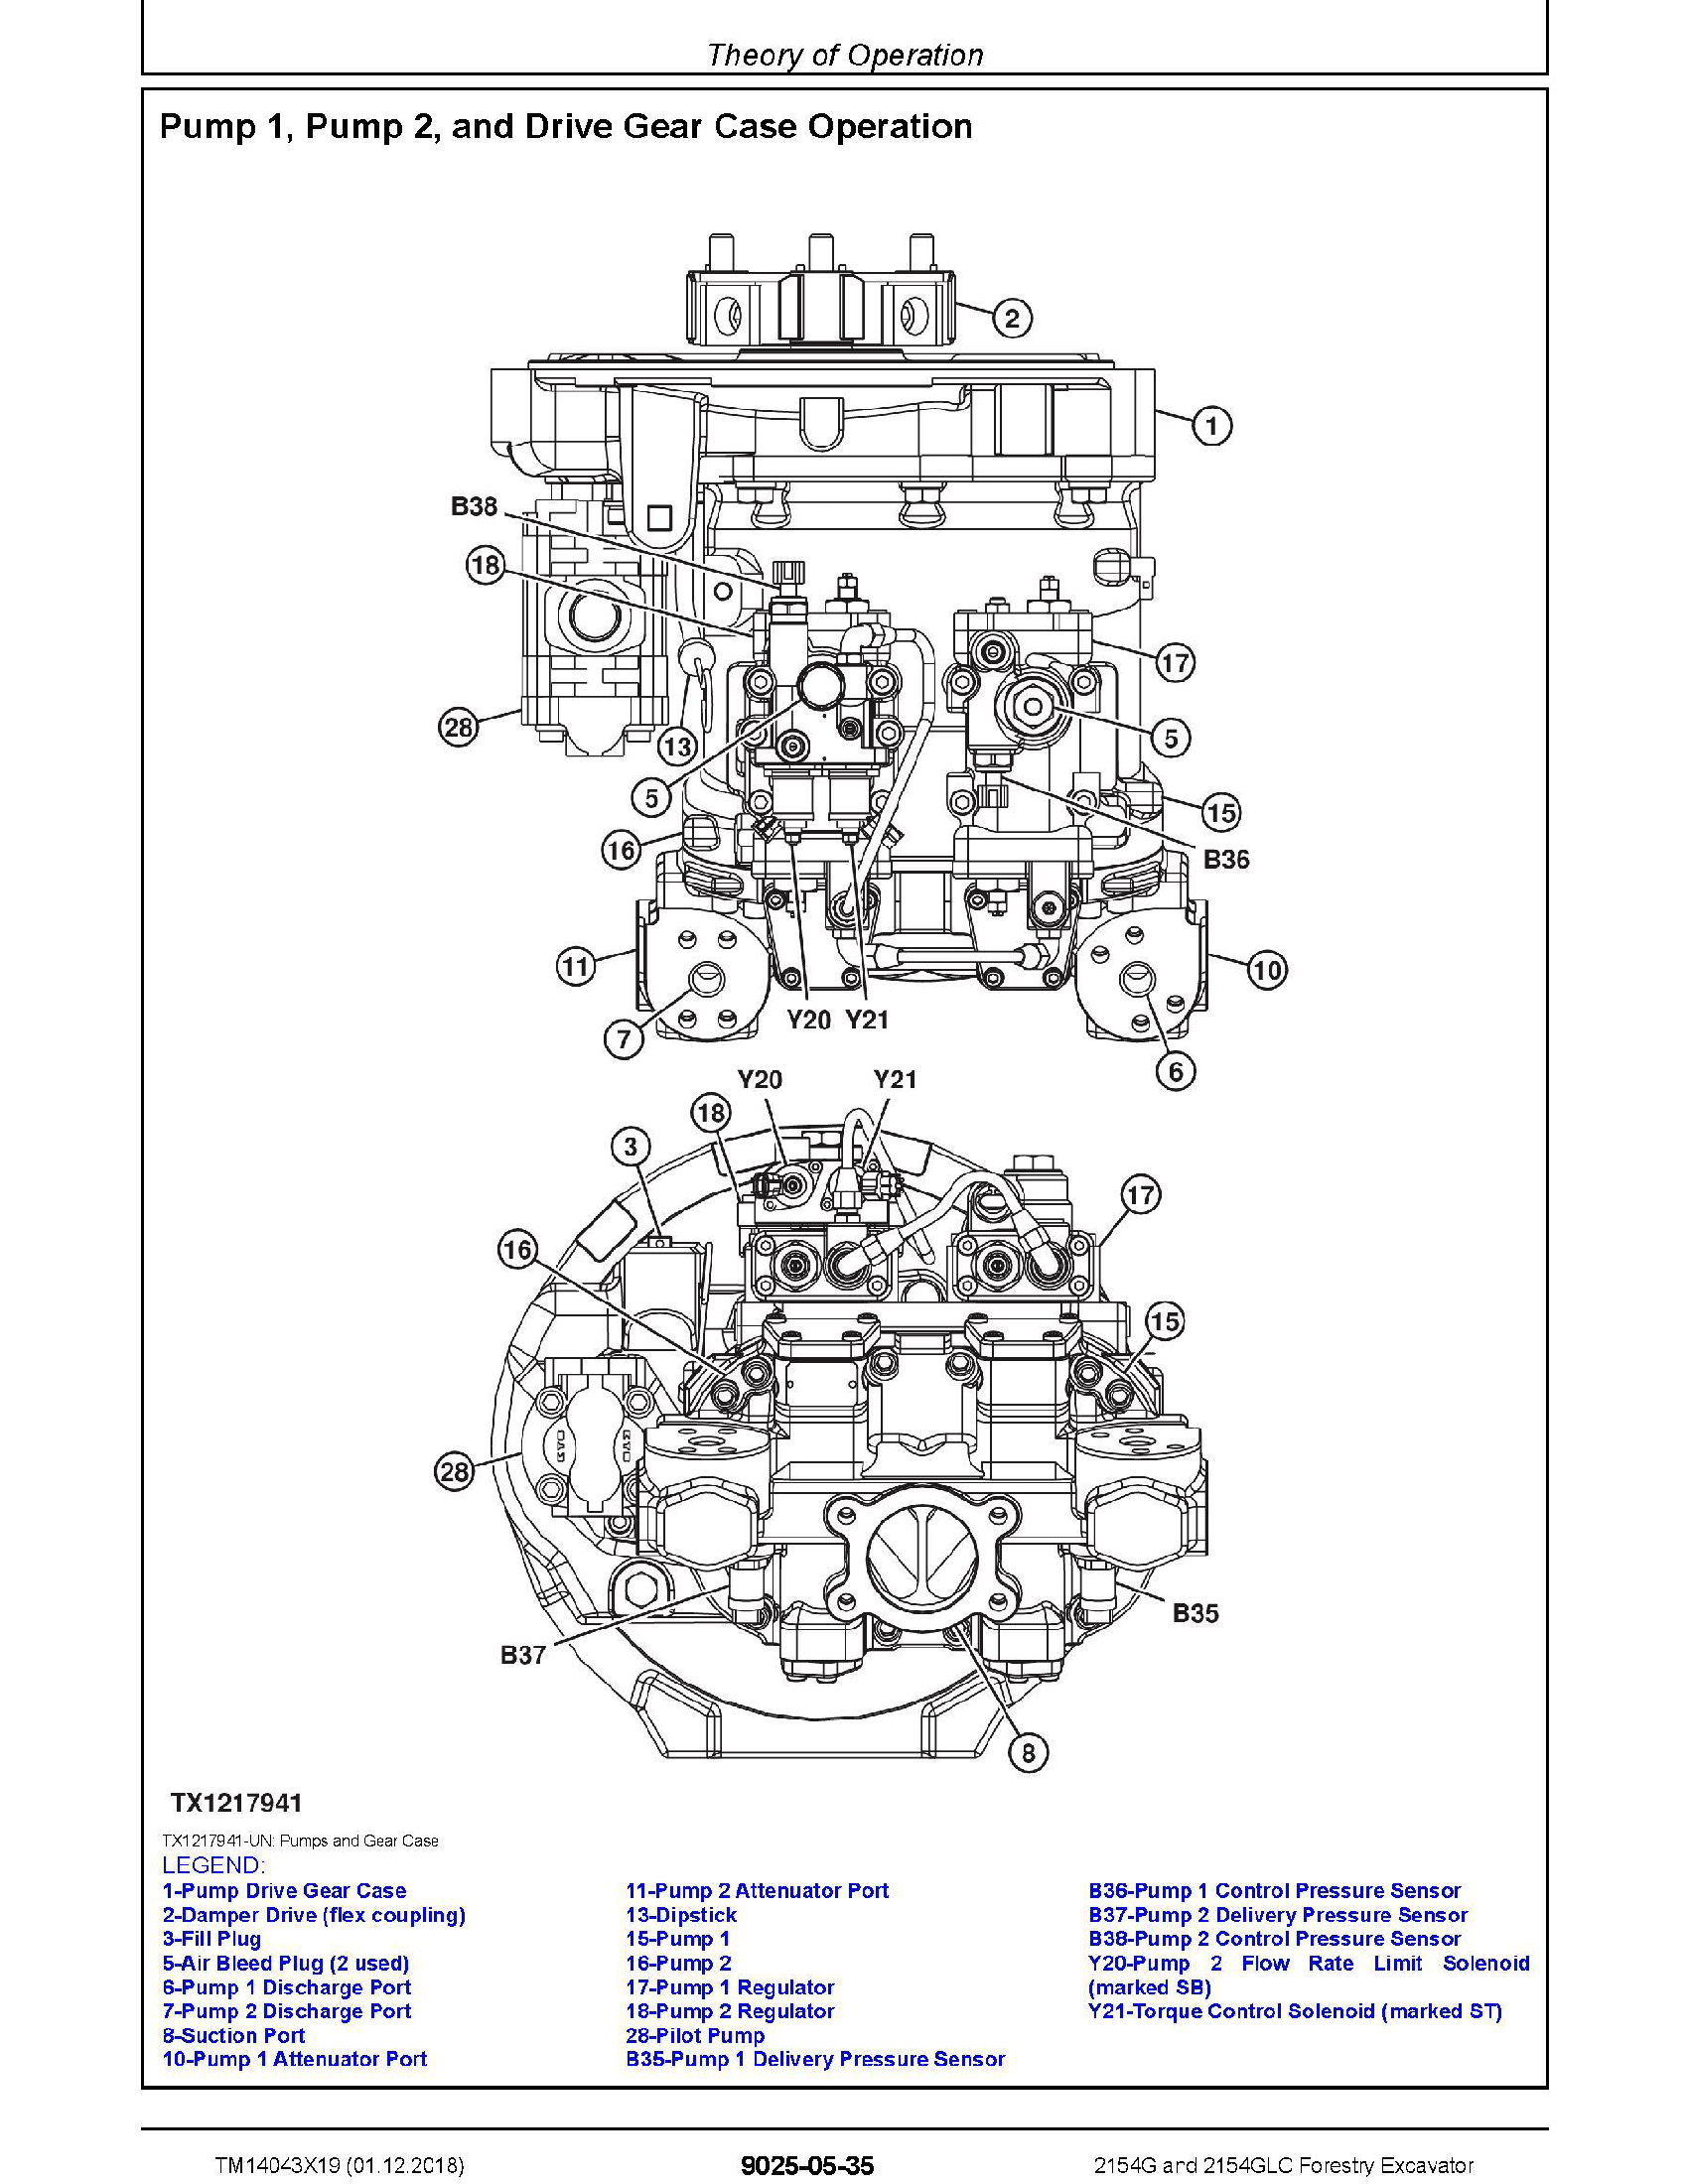 John Deere 135G manual pdf